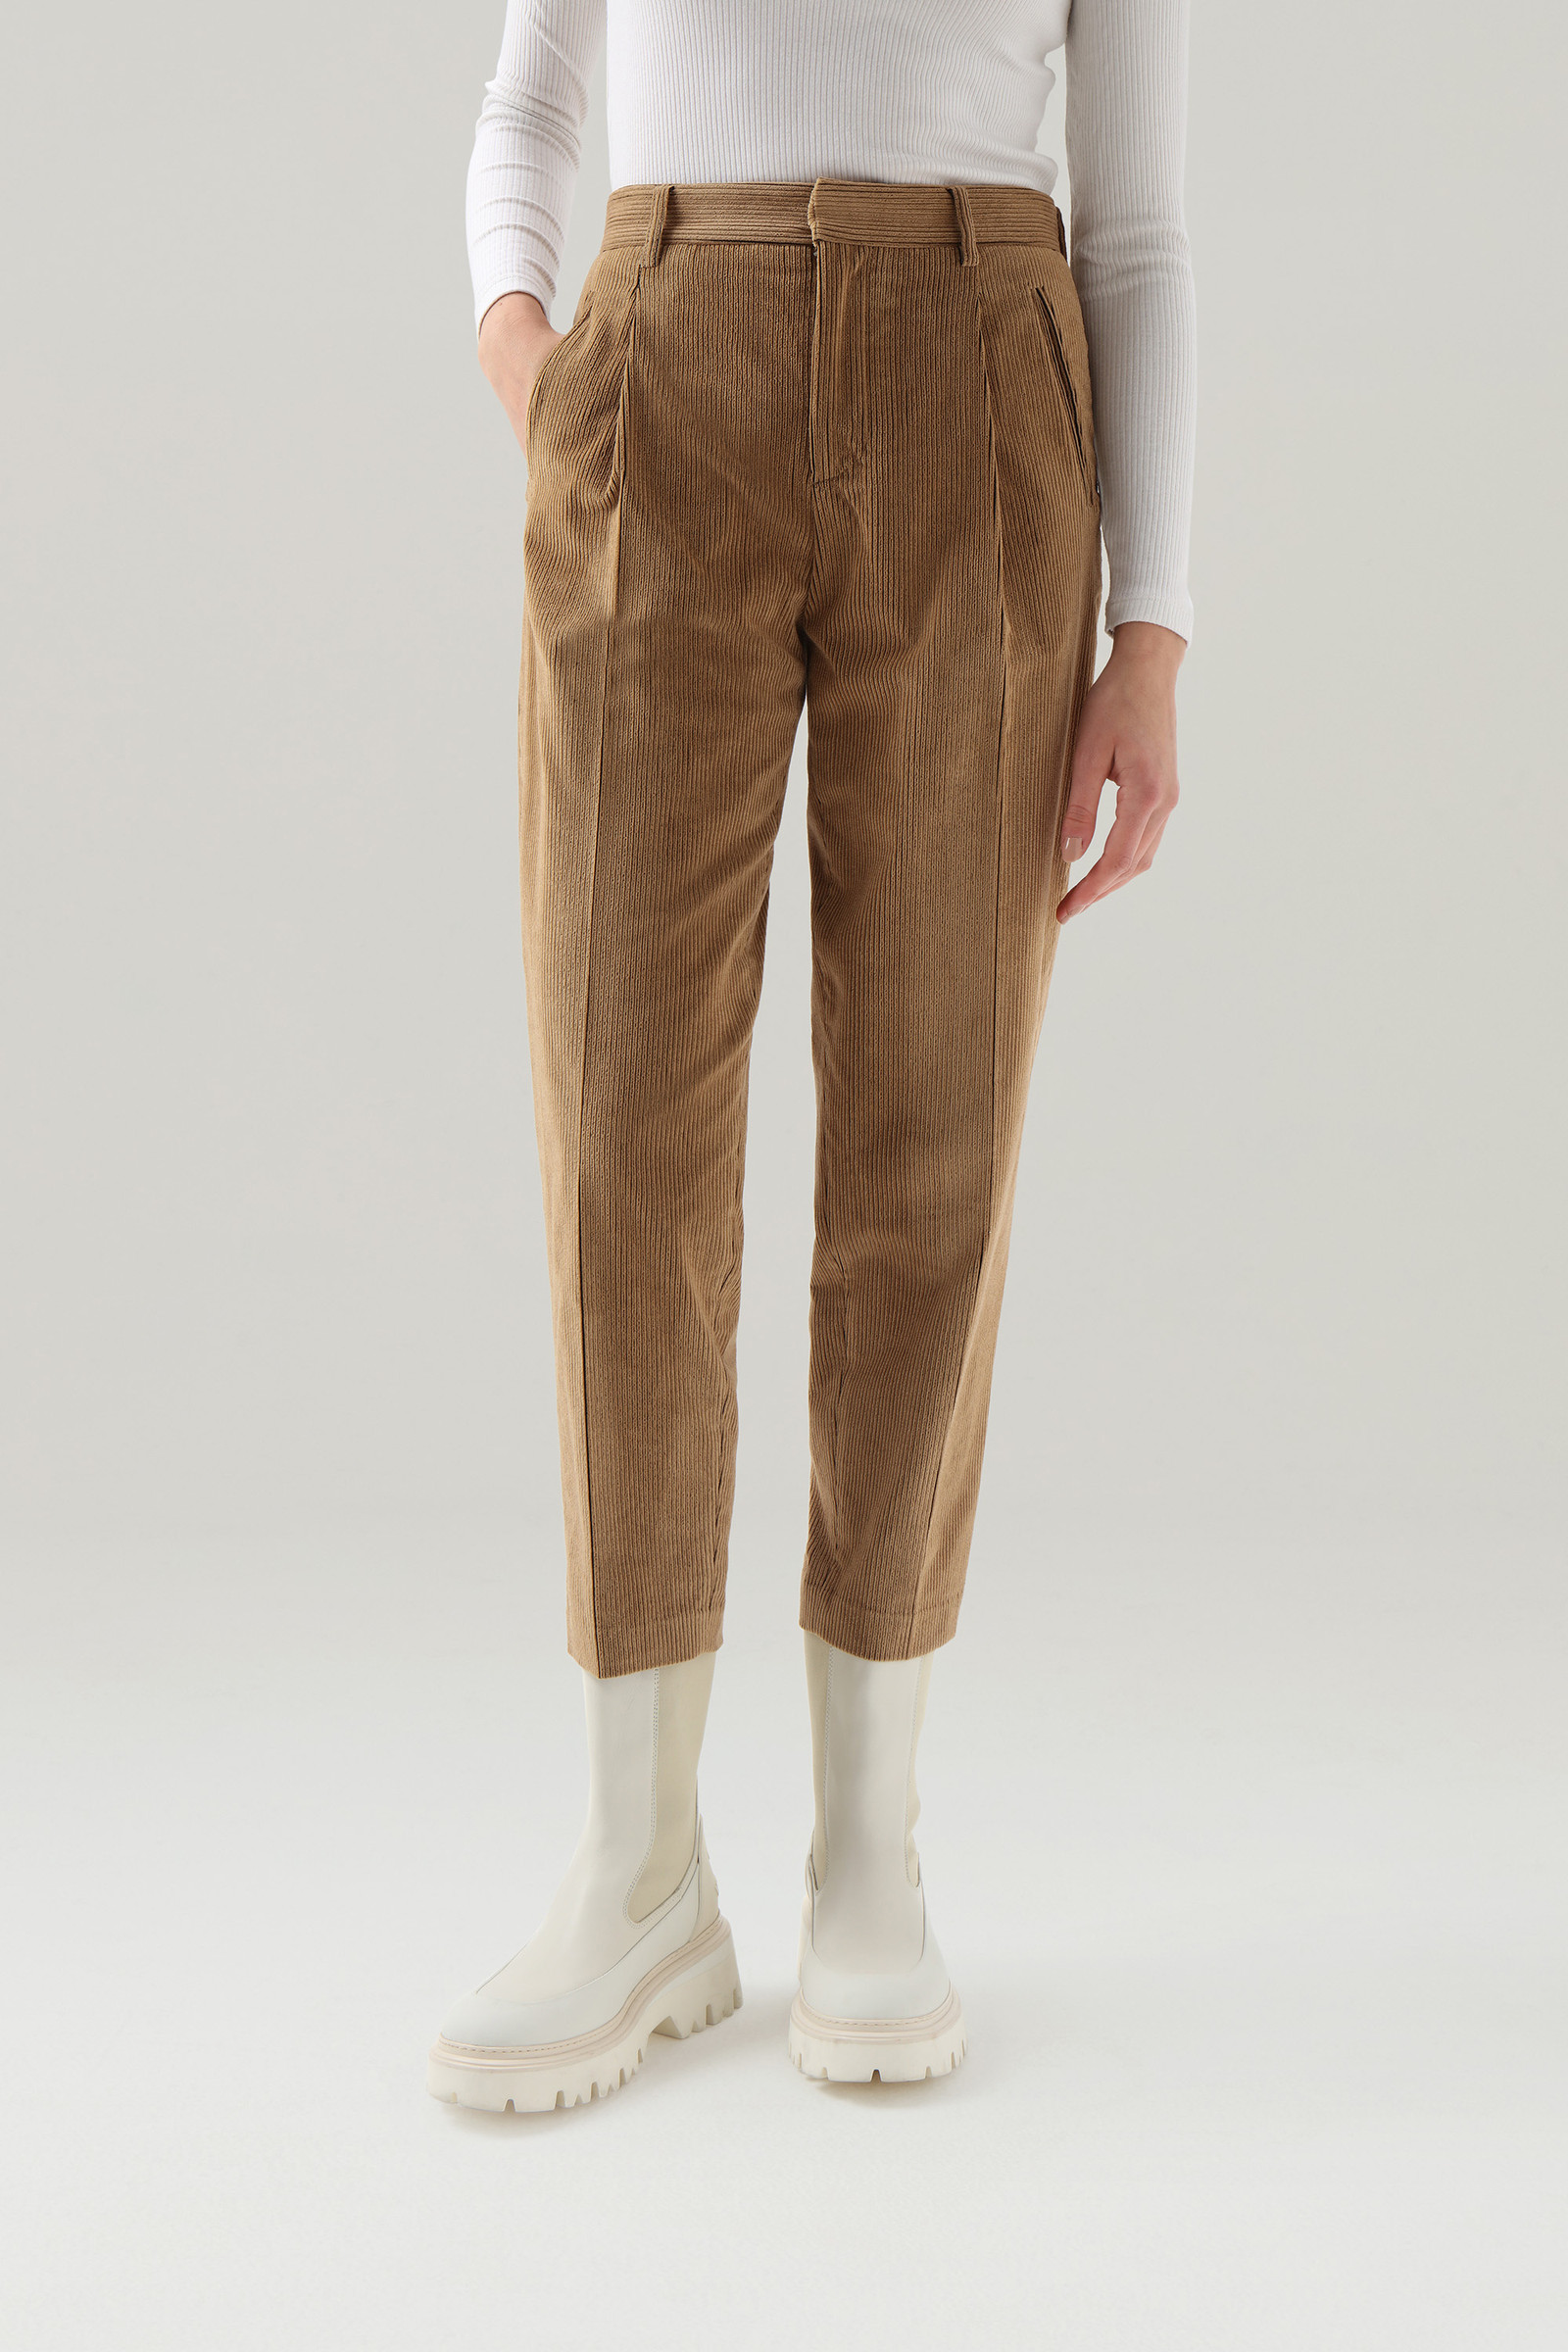 Soft Corduroy Pleated Pants - Women - Beige